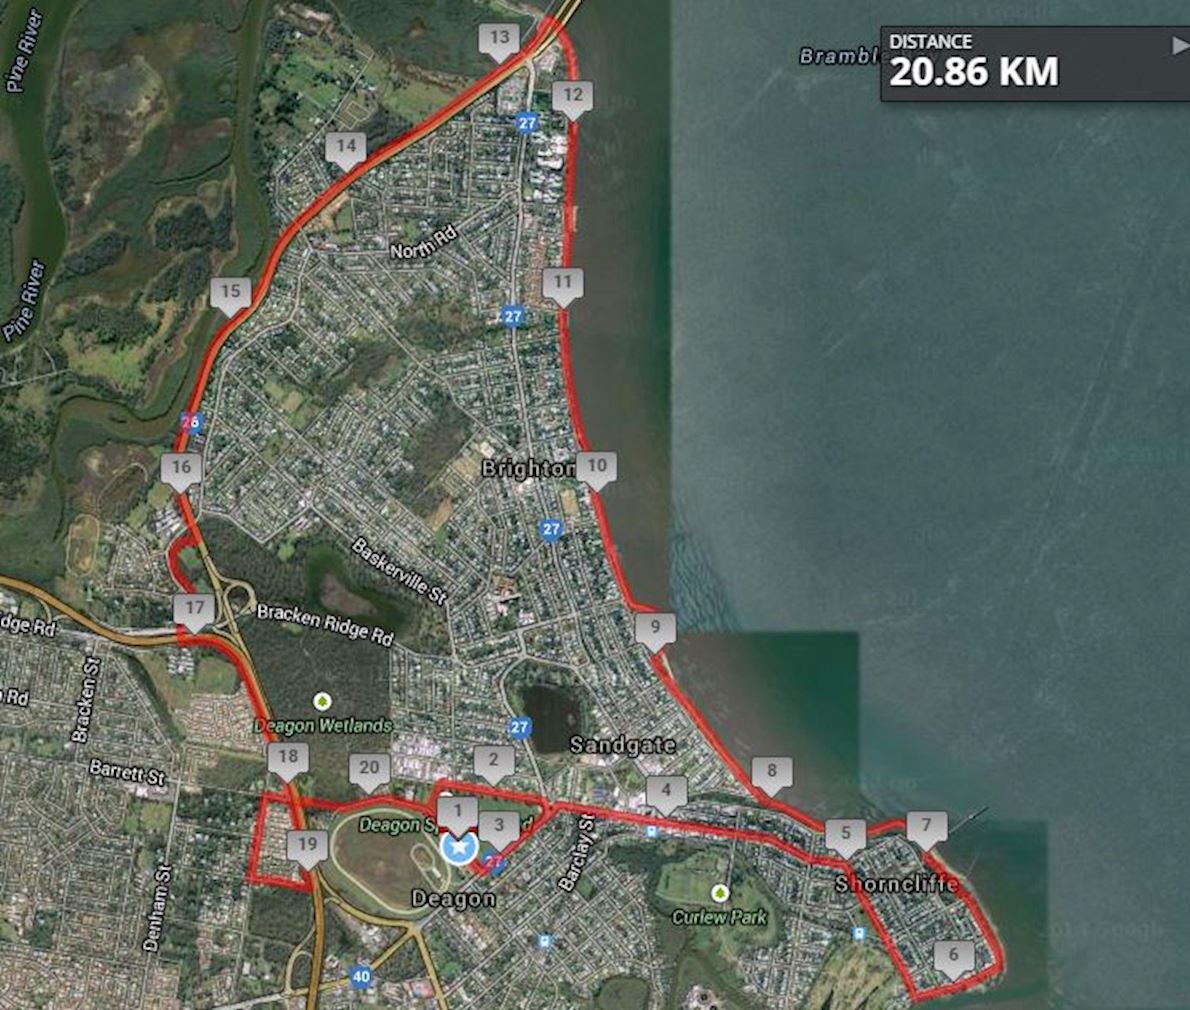 Queensland Half Marathon, May 26 2019 World's Marathons